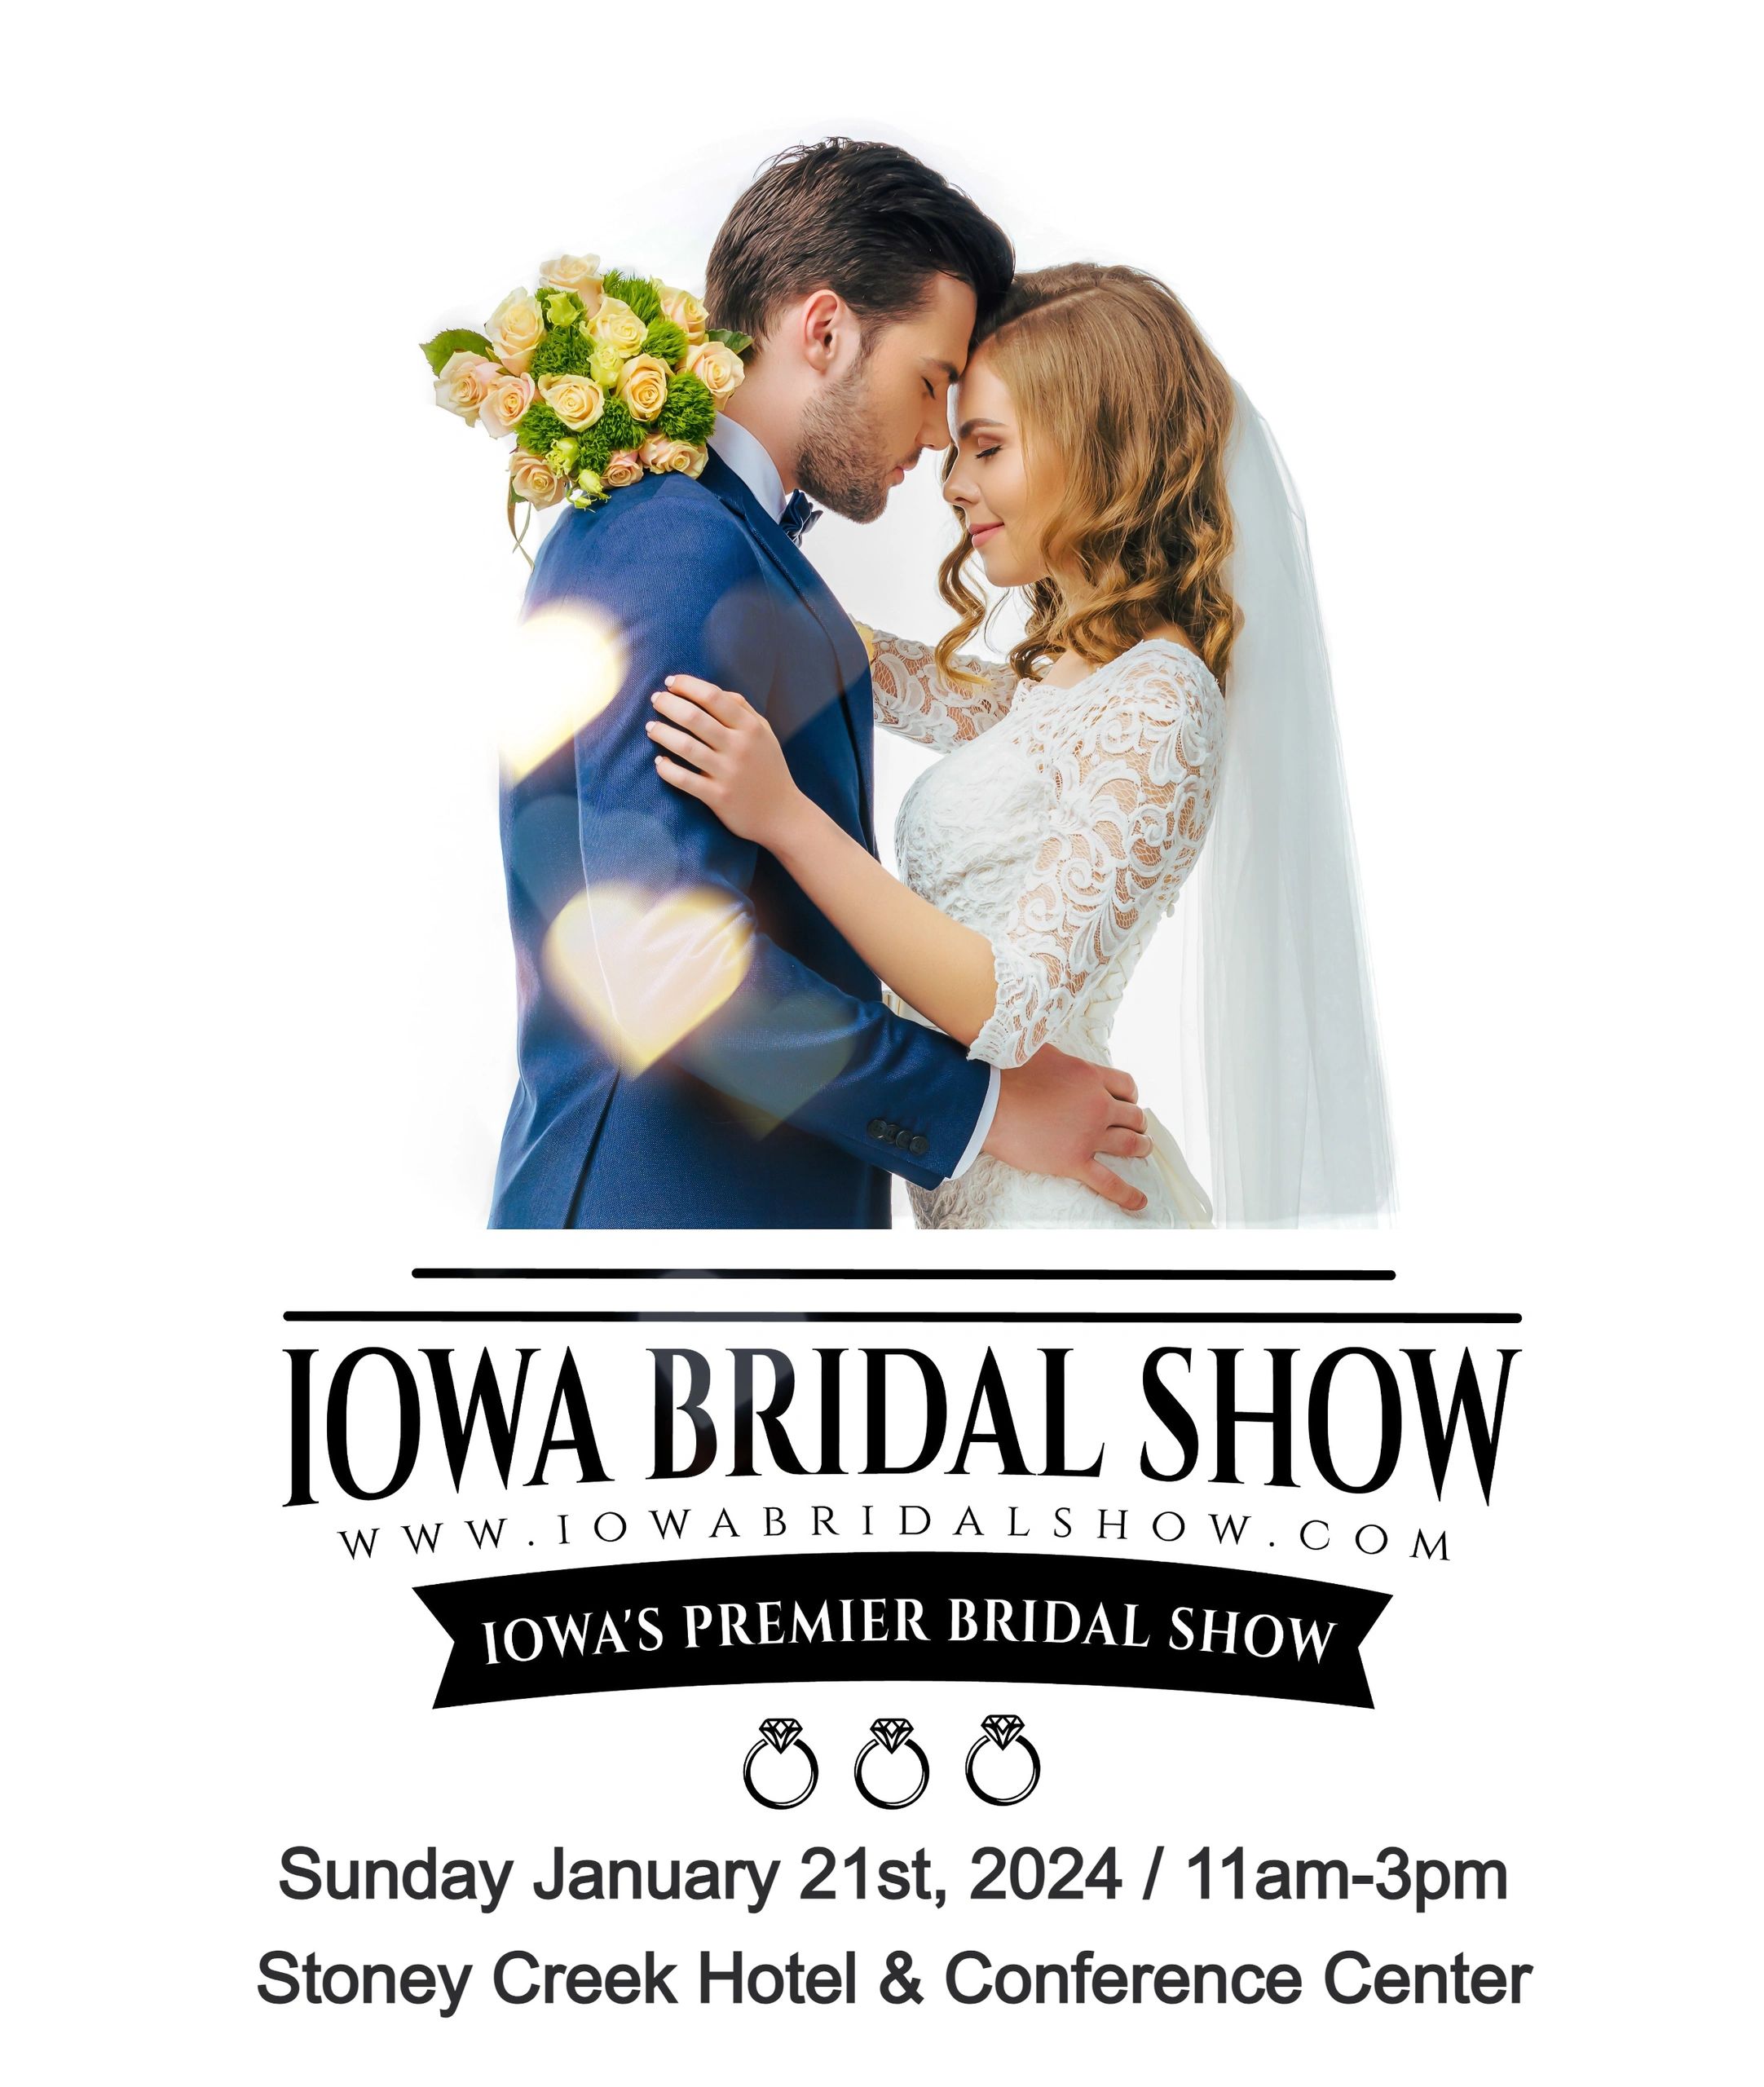 Iowa Bridal Show Iowa Bridal Show, Iowa Wedding Shows in West Des